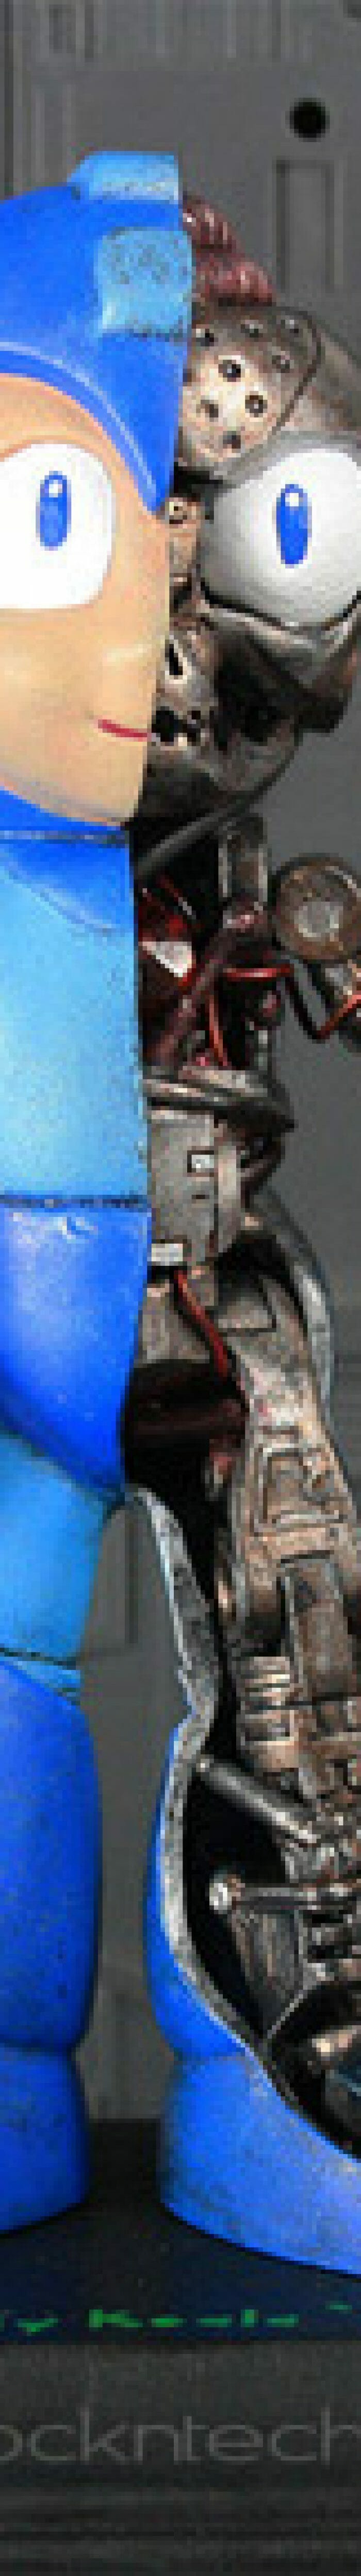 FOTOFUN - Anatomia do Mega Man.